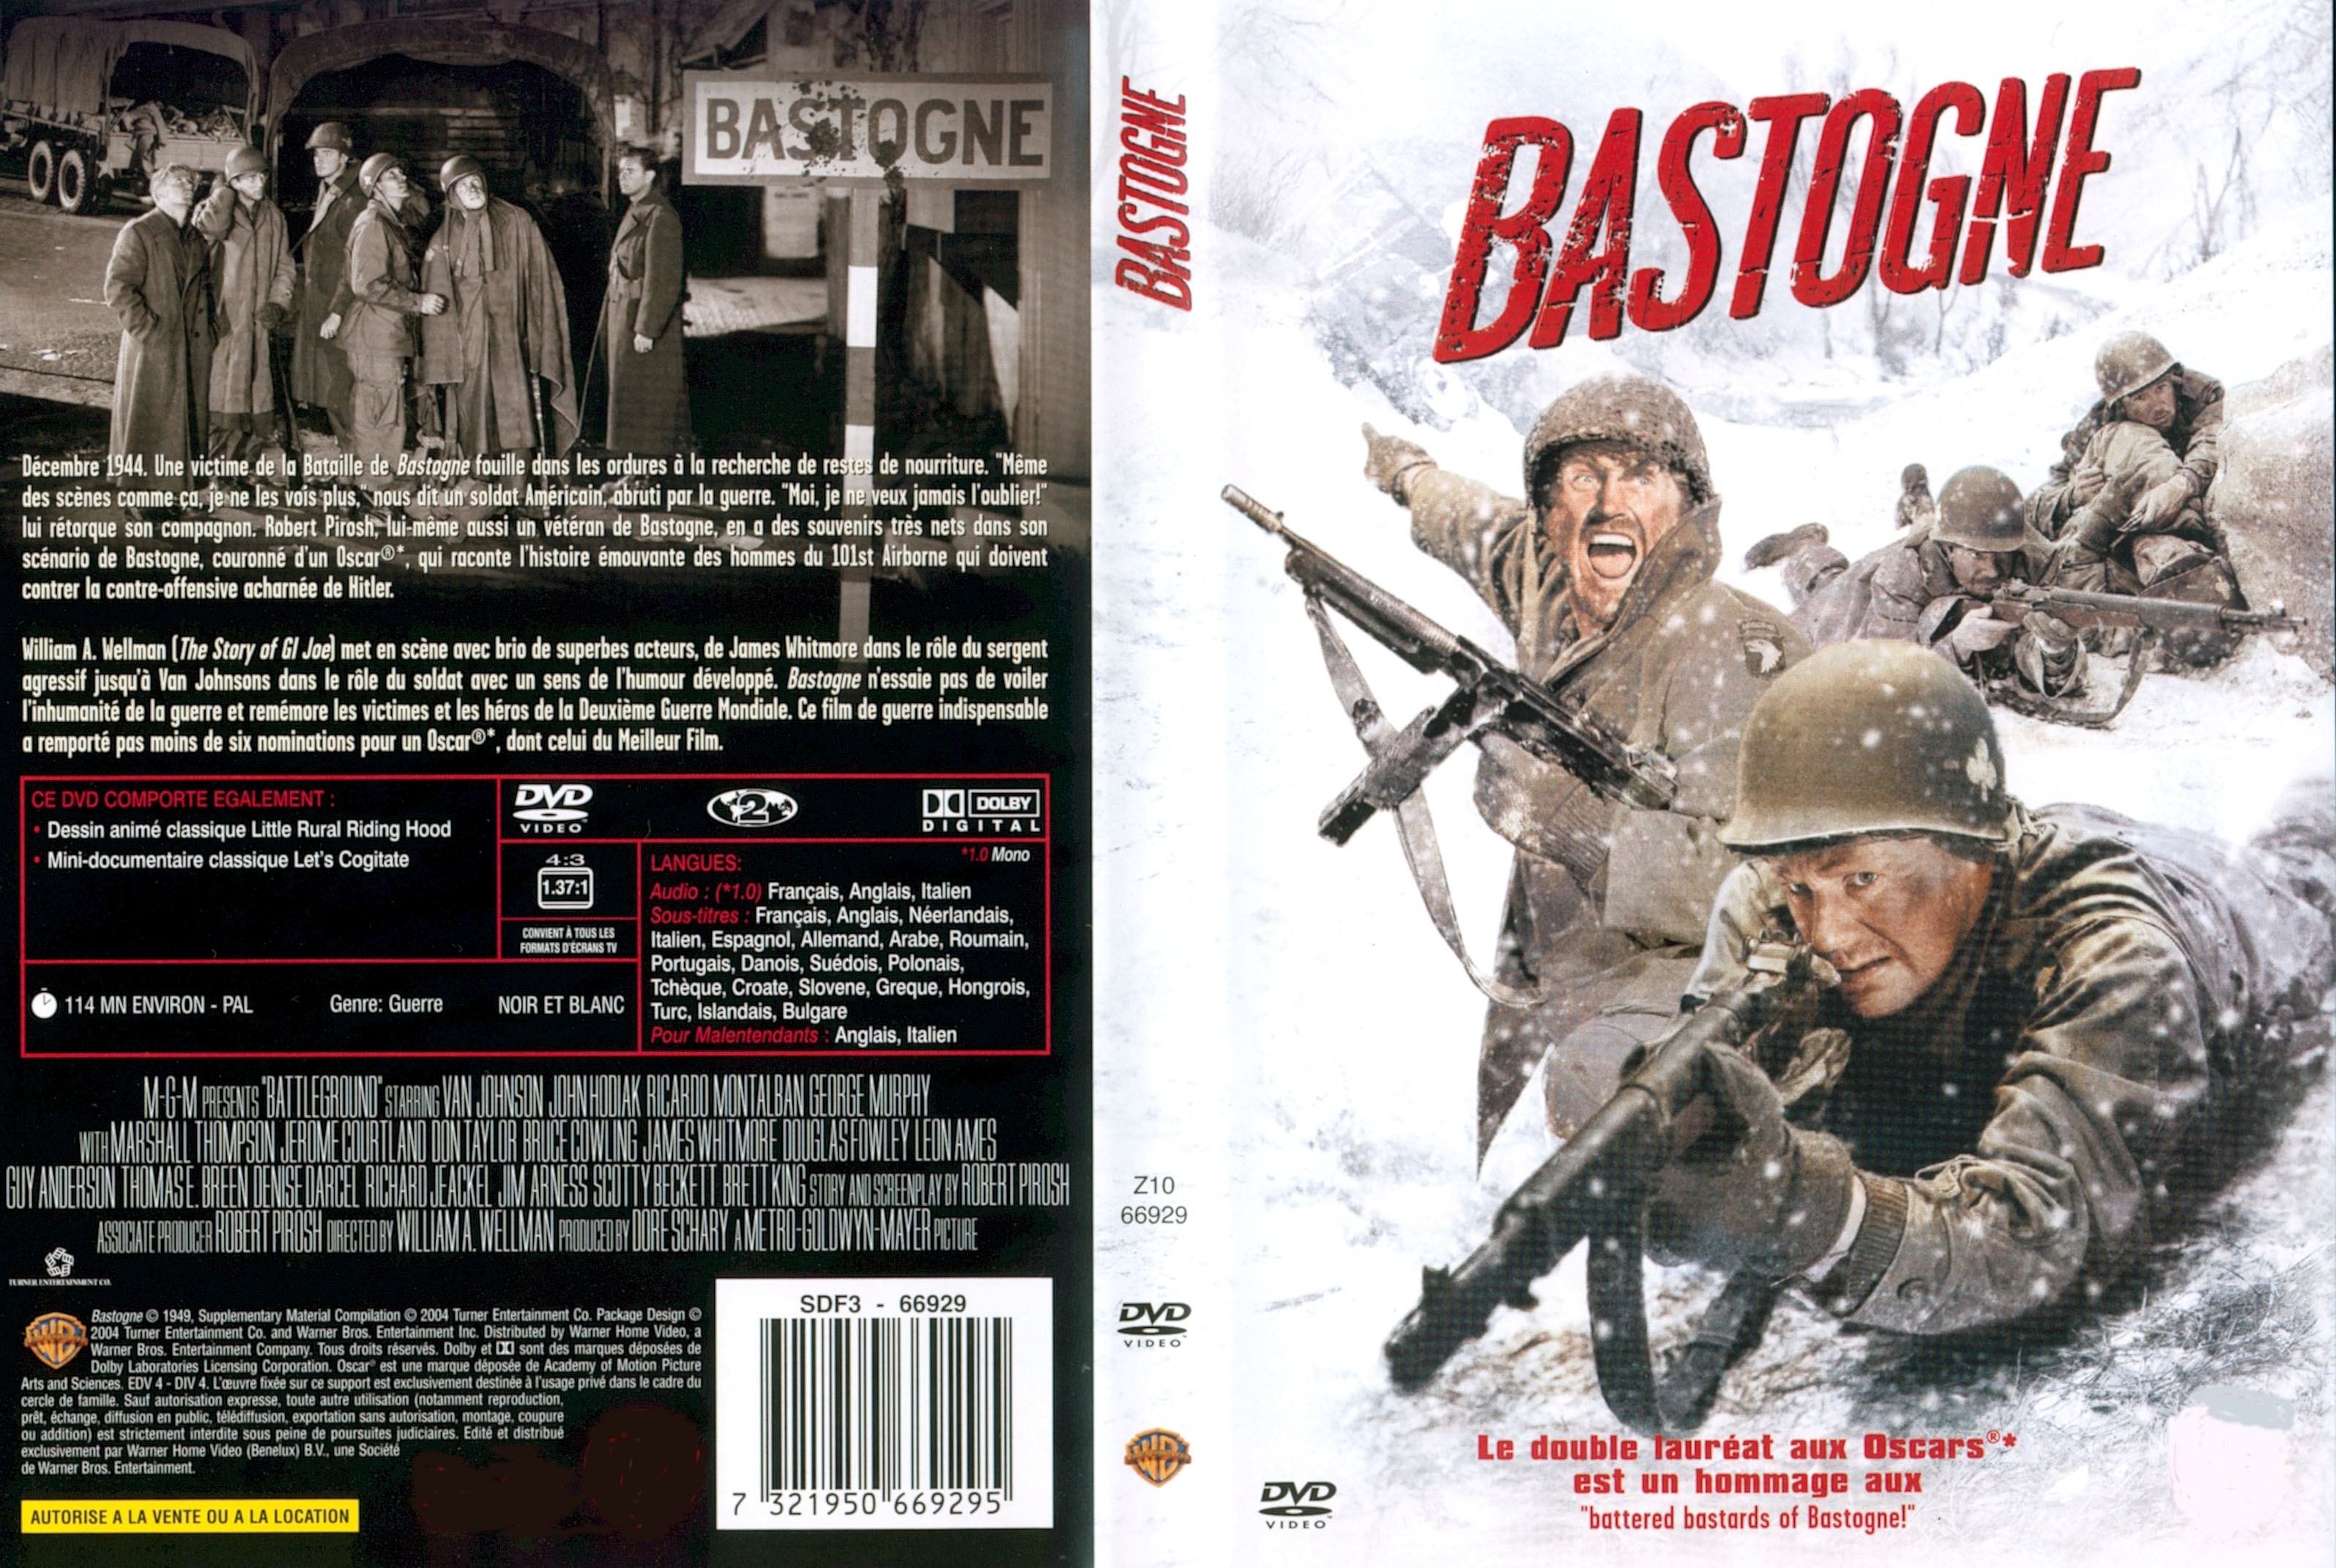 Jaquette DVD Bastogne v2